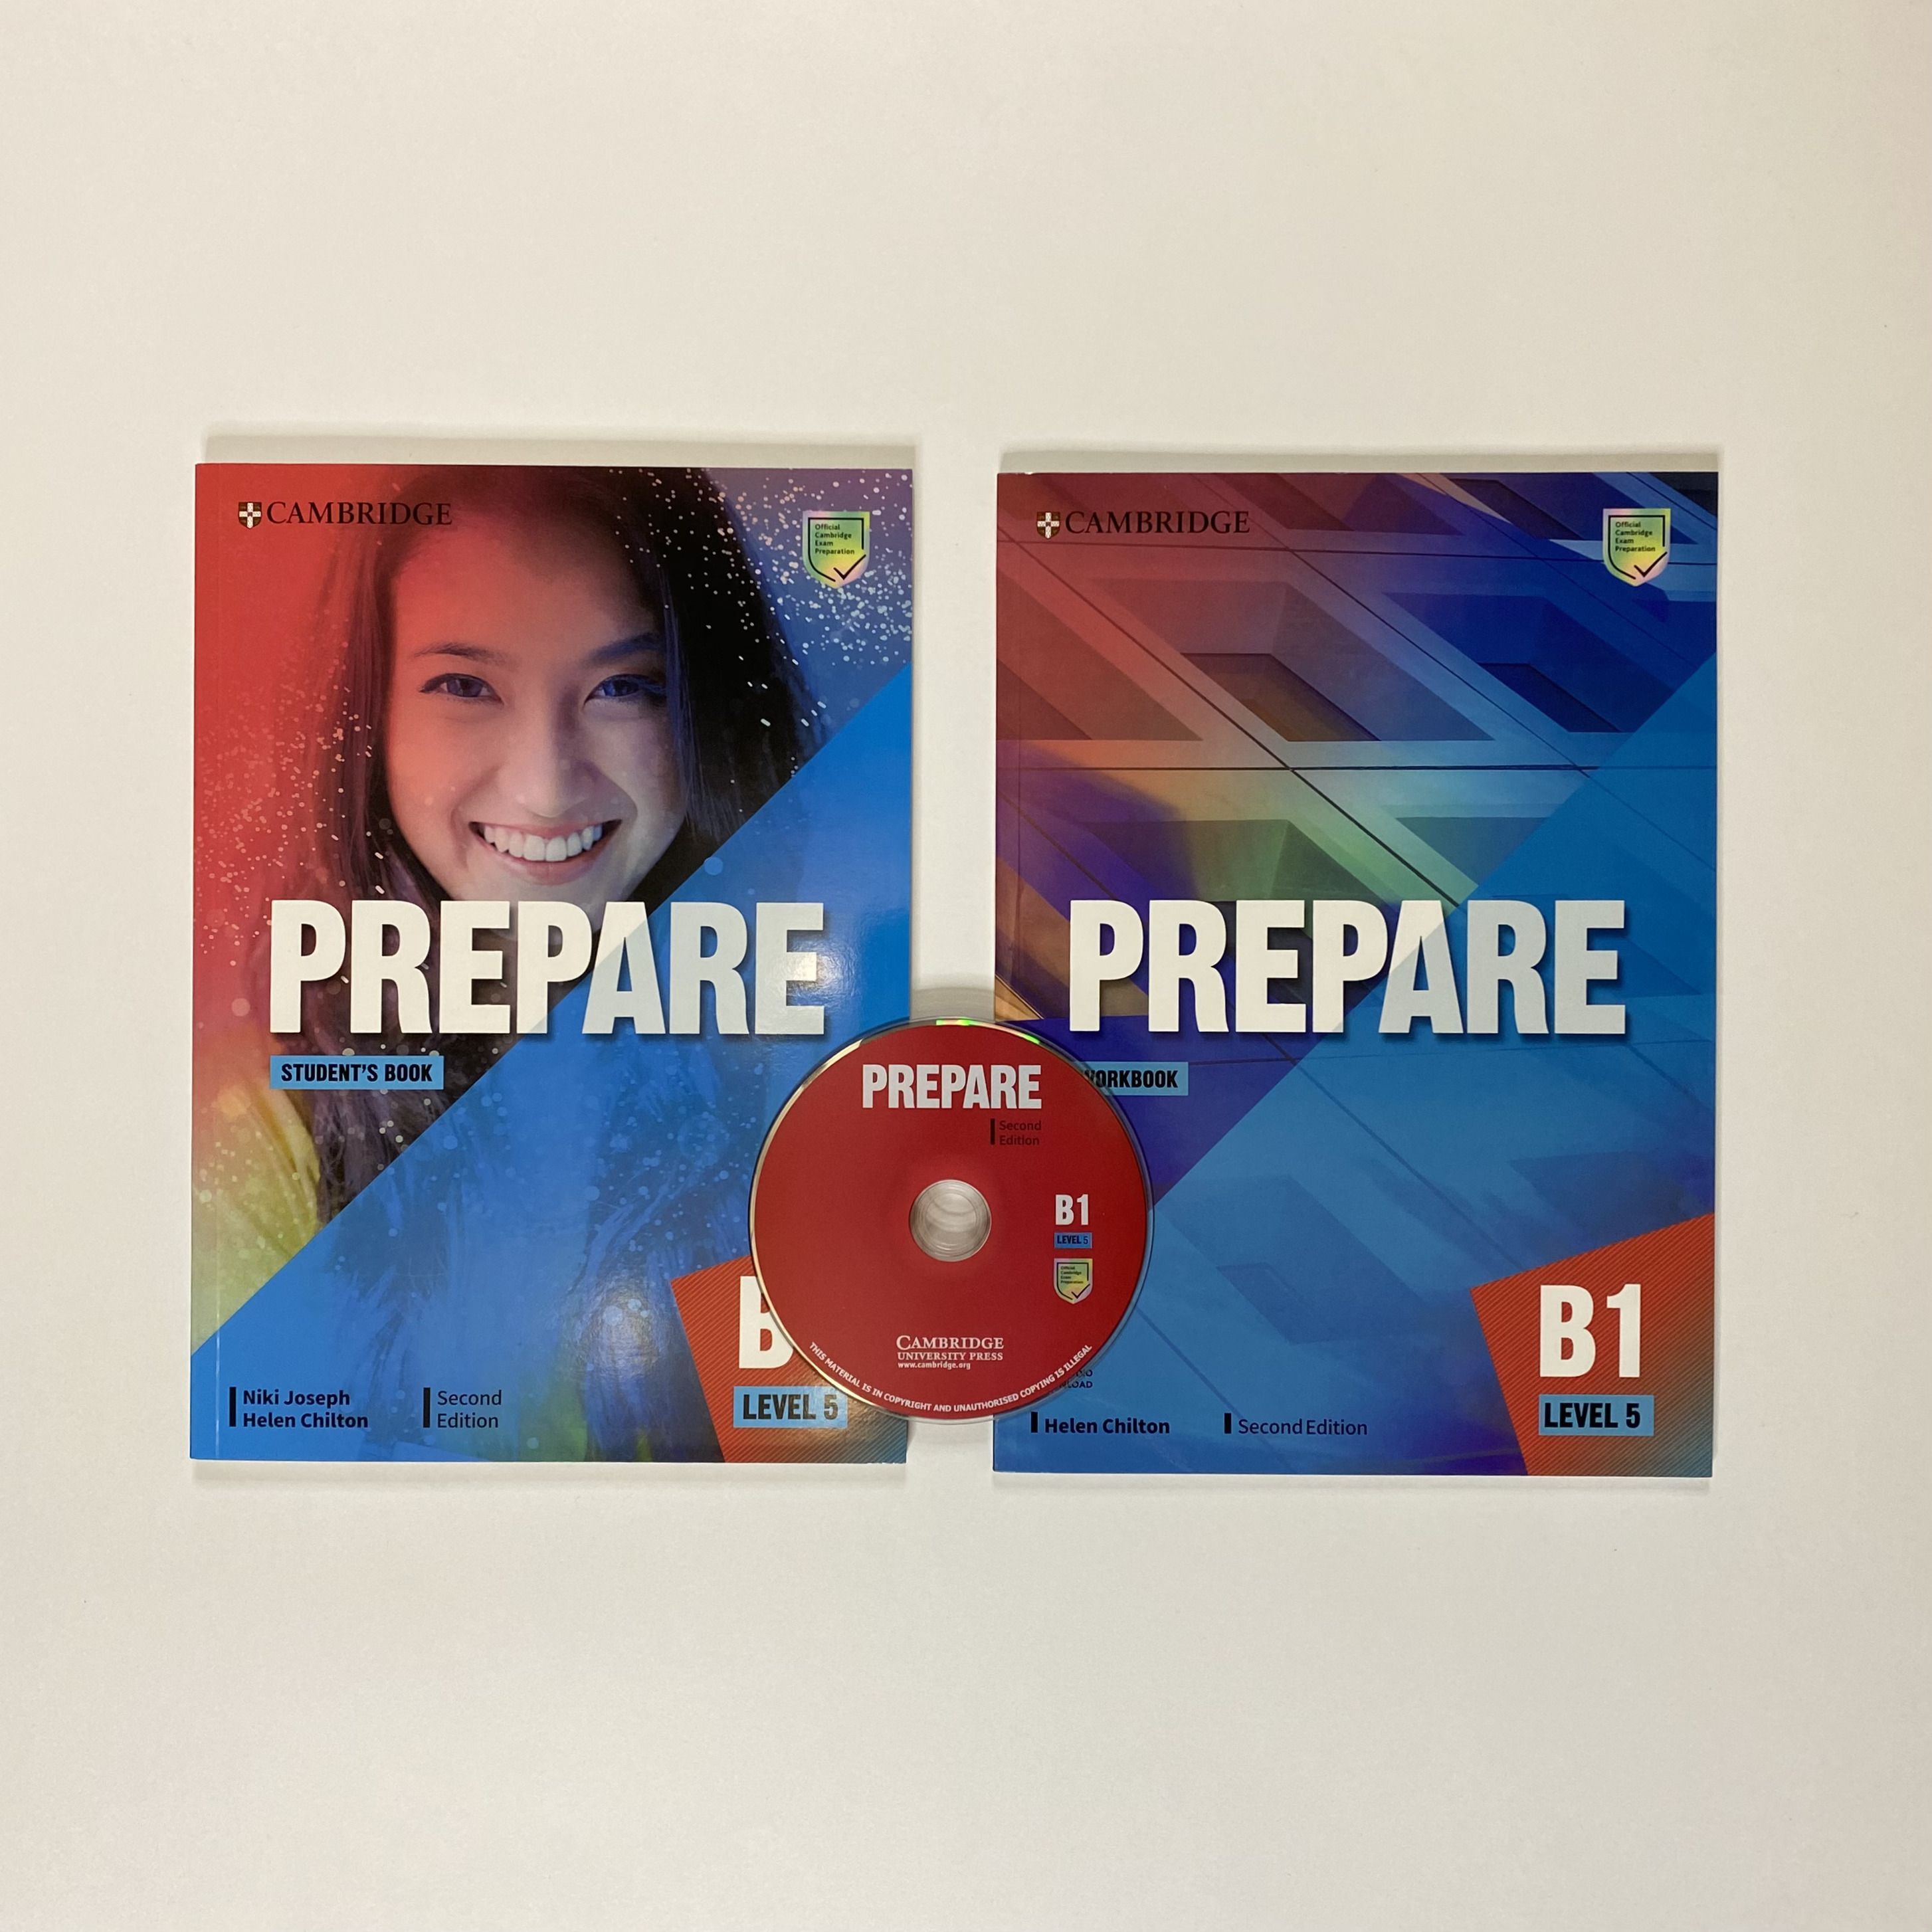 Prepare level 5. Prepare 7 student's book contents.